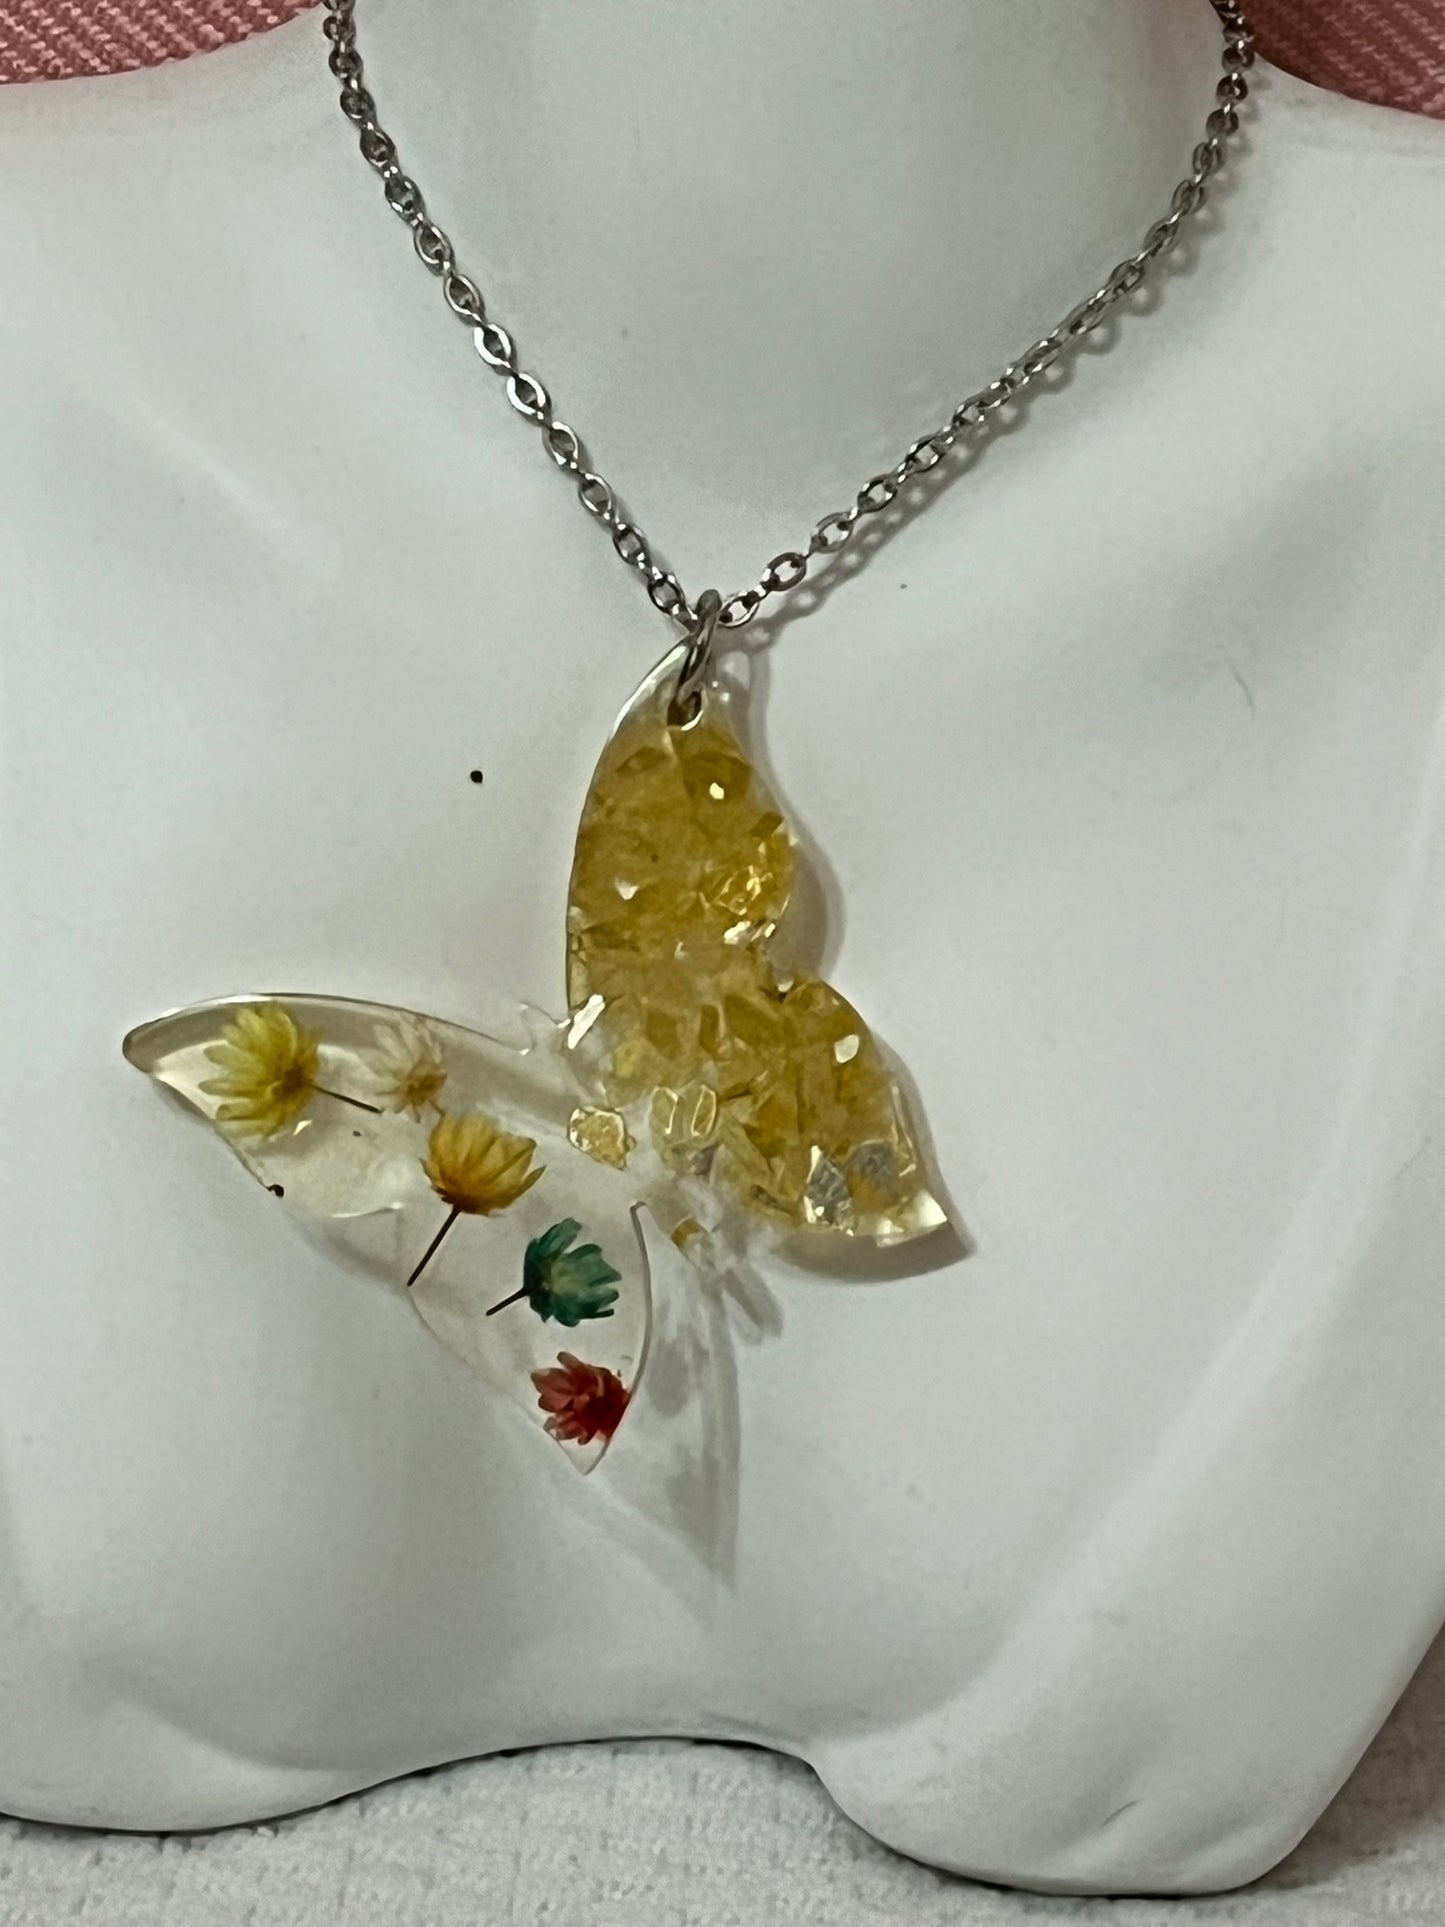 Encapsulado de flores secas y vidrio forma de mariposa